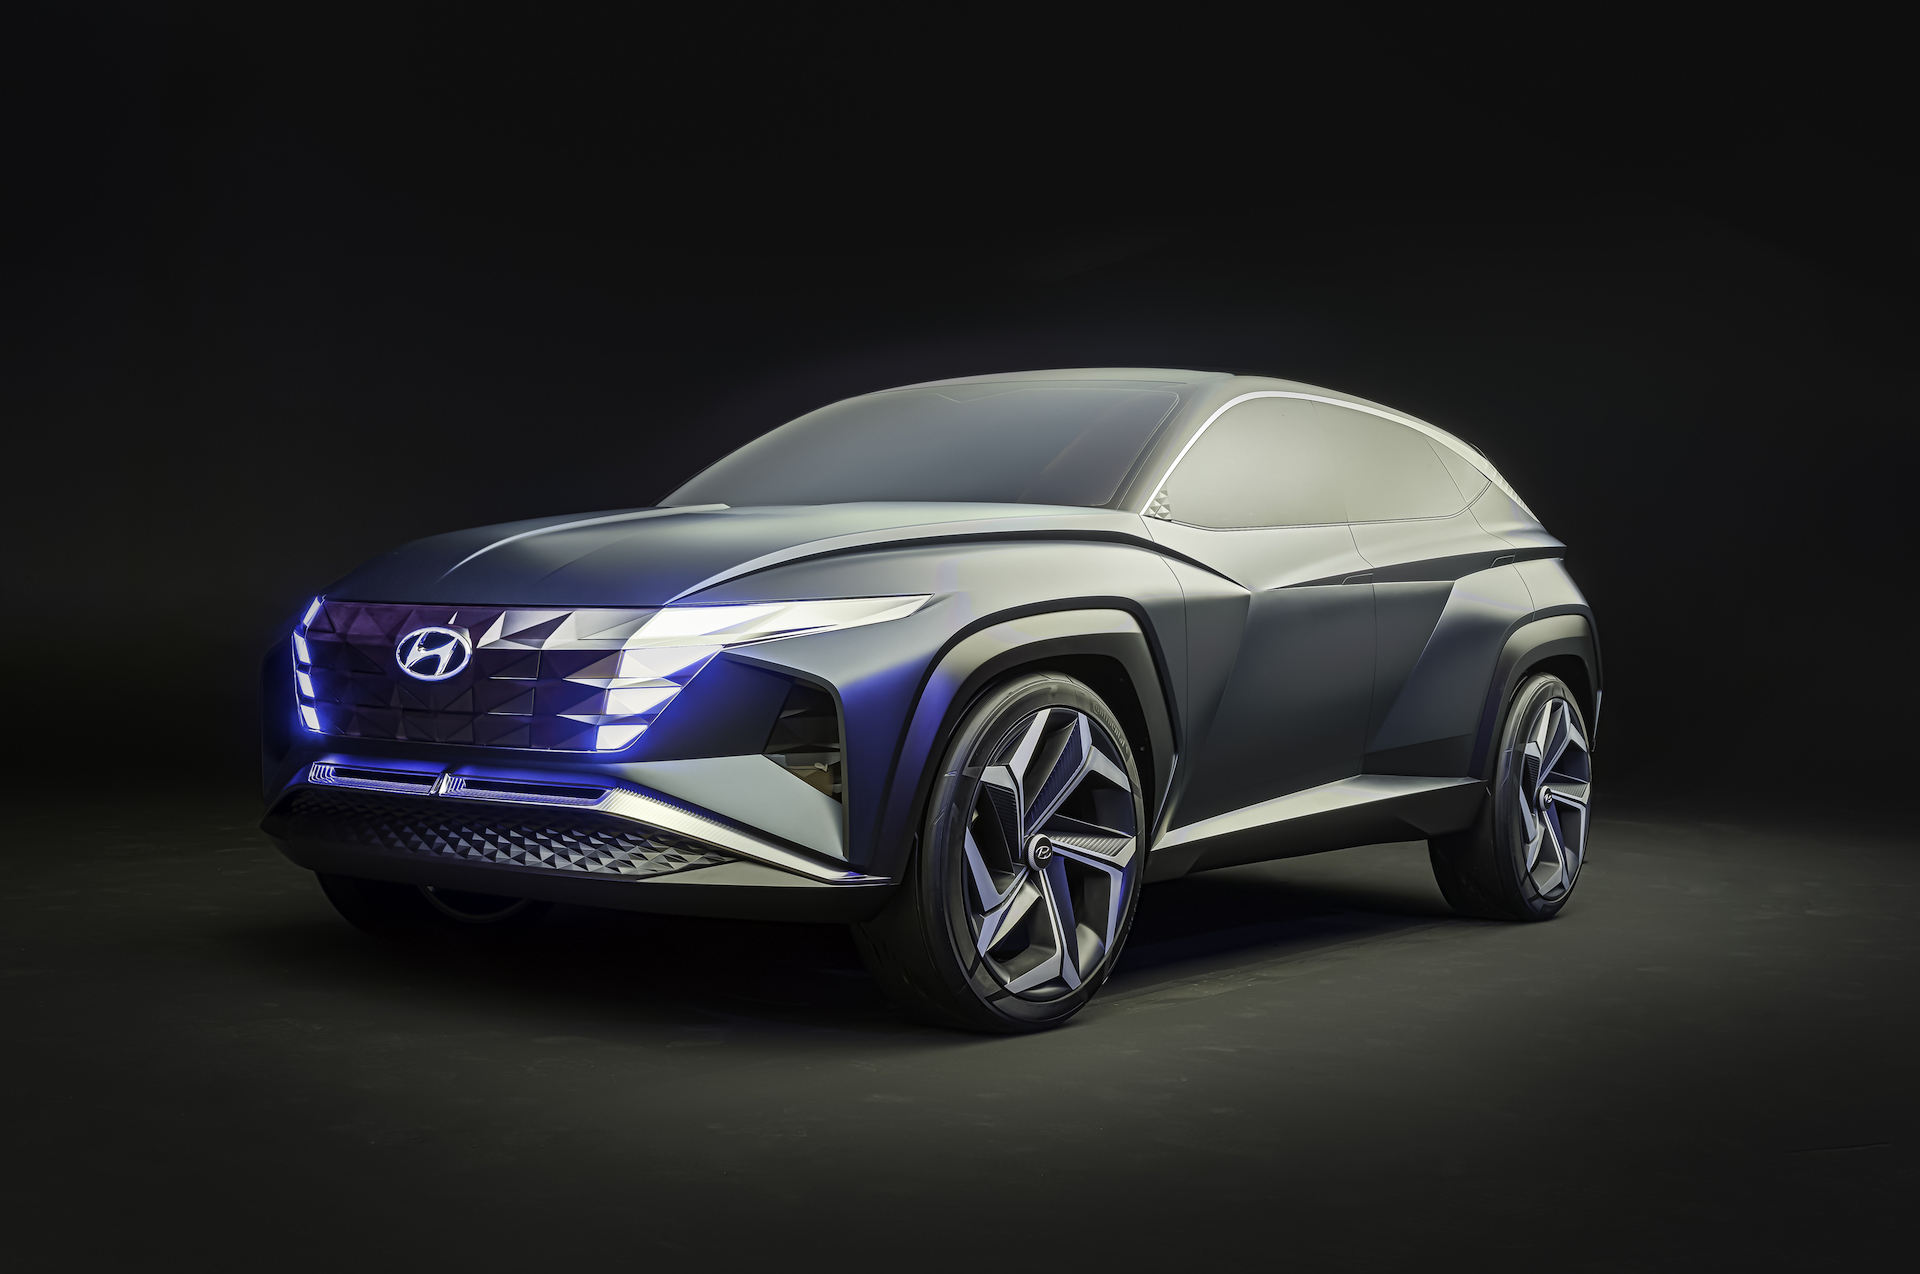 Hyundai Tucson thế hệ mới bất ngờ lộ toàn bộ thiết kế dù cuối năm mới ra mắt